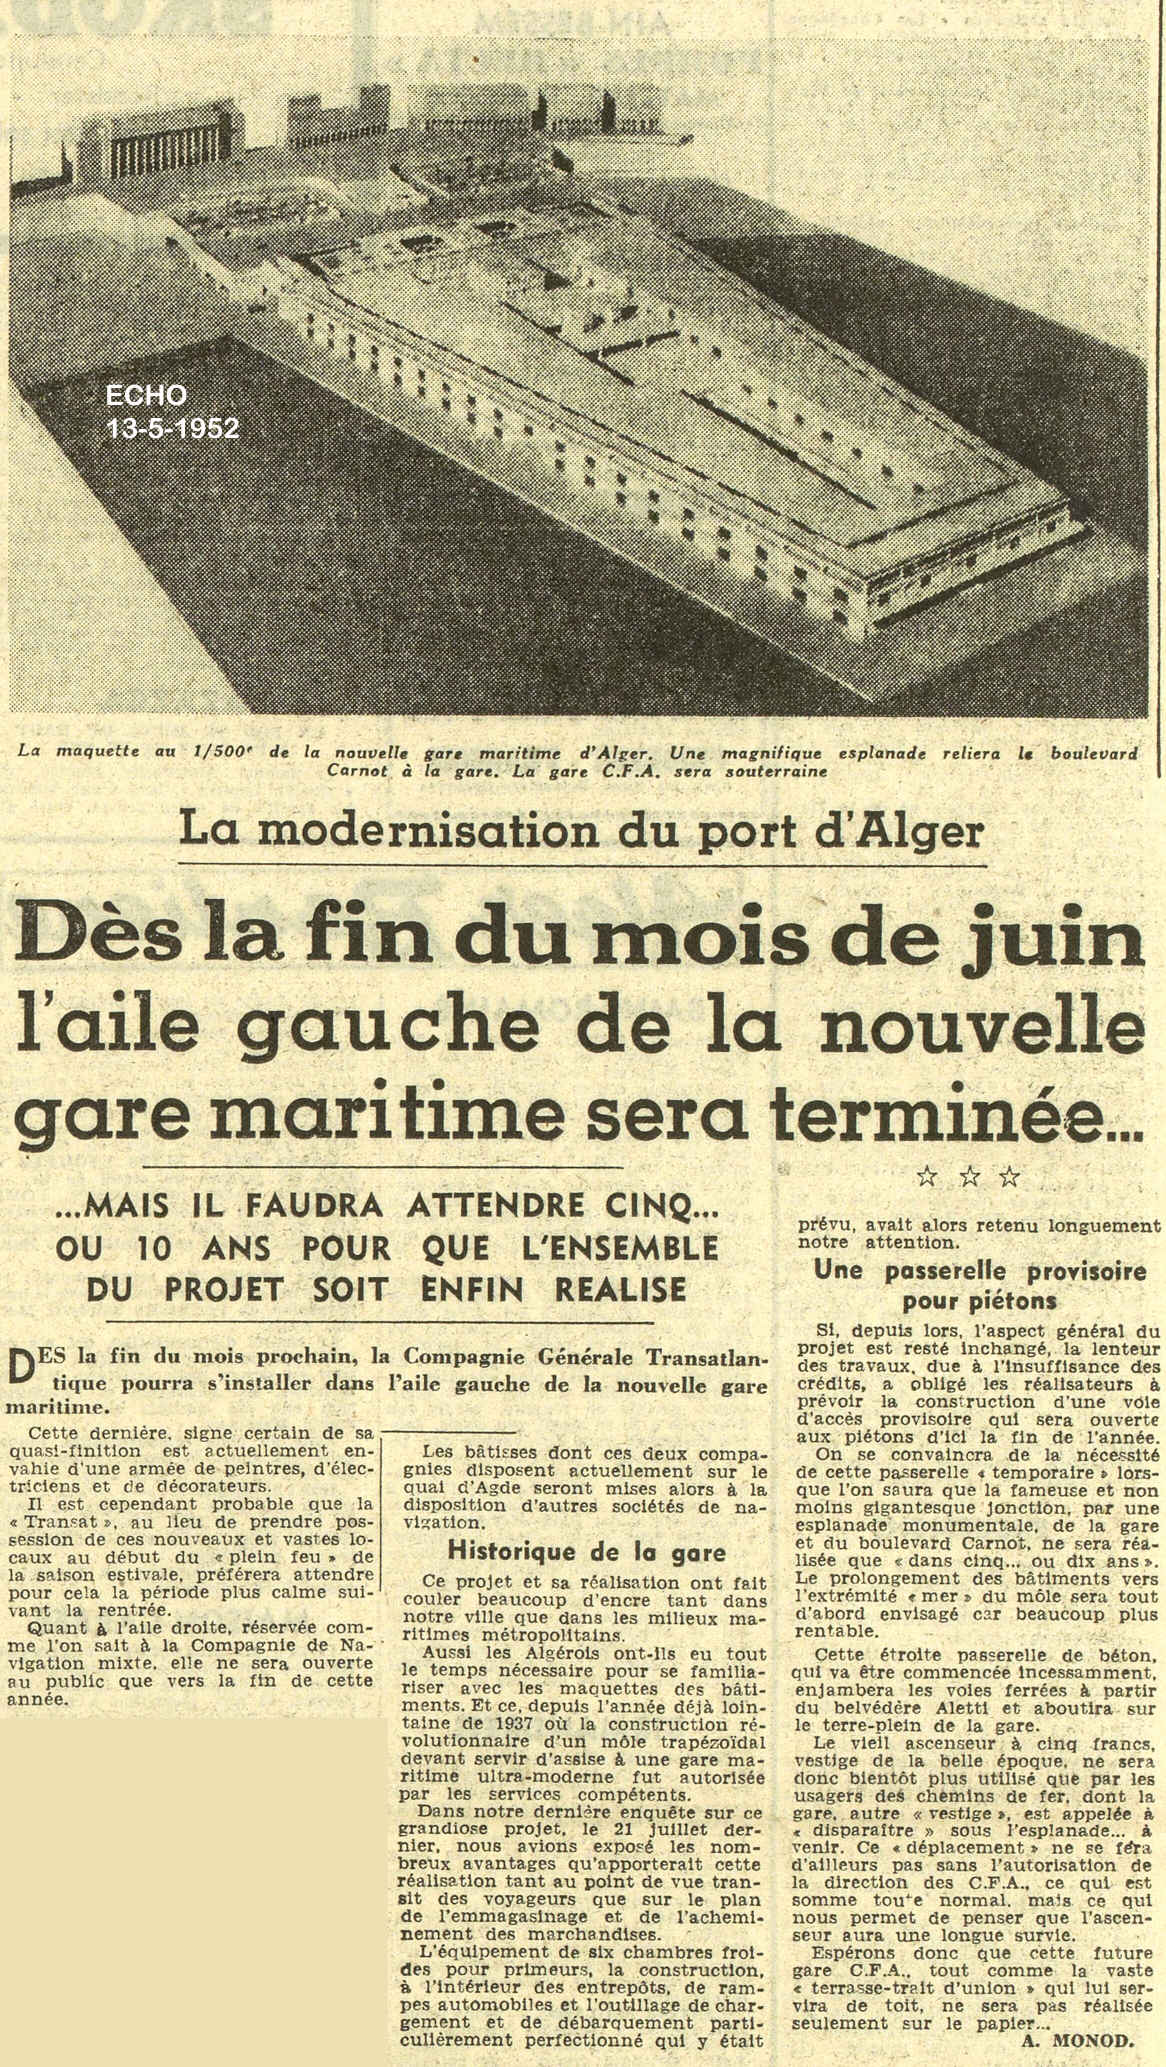 La modernisation du port d'Alger